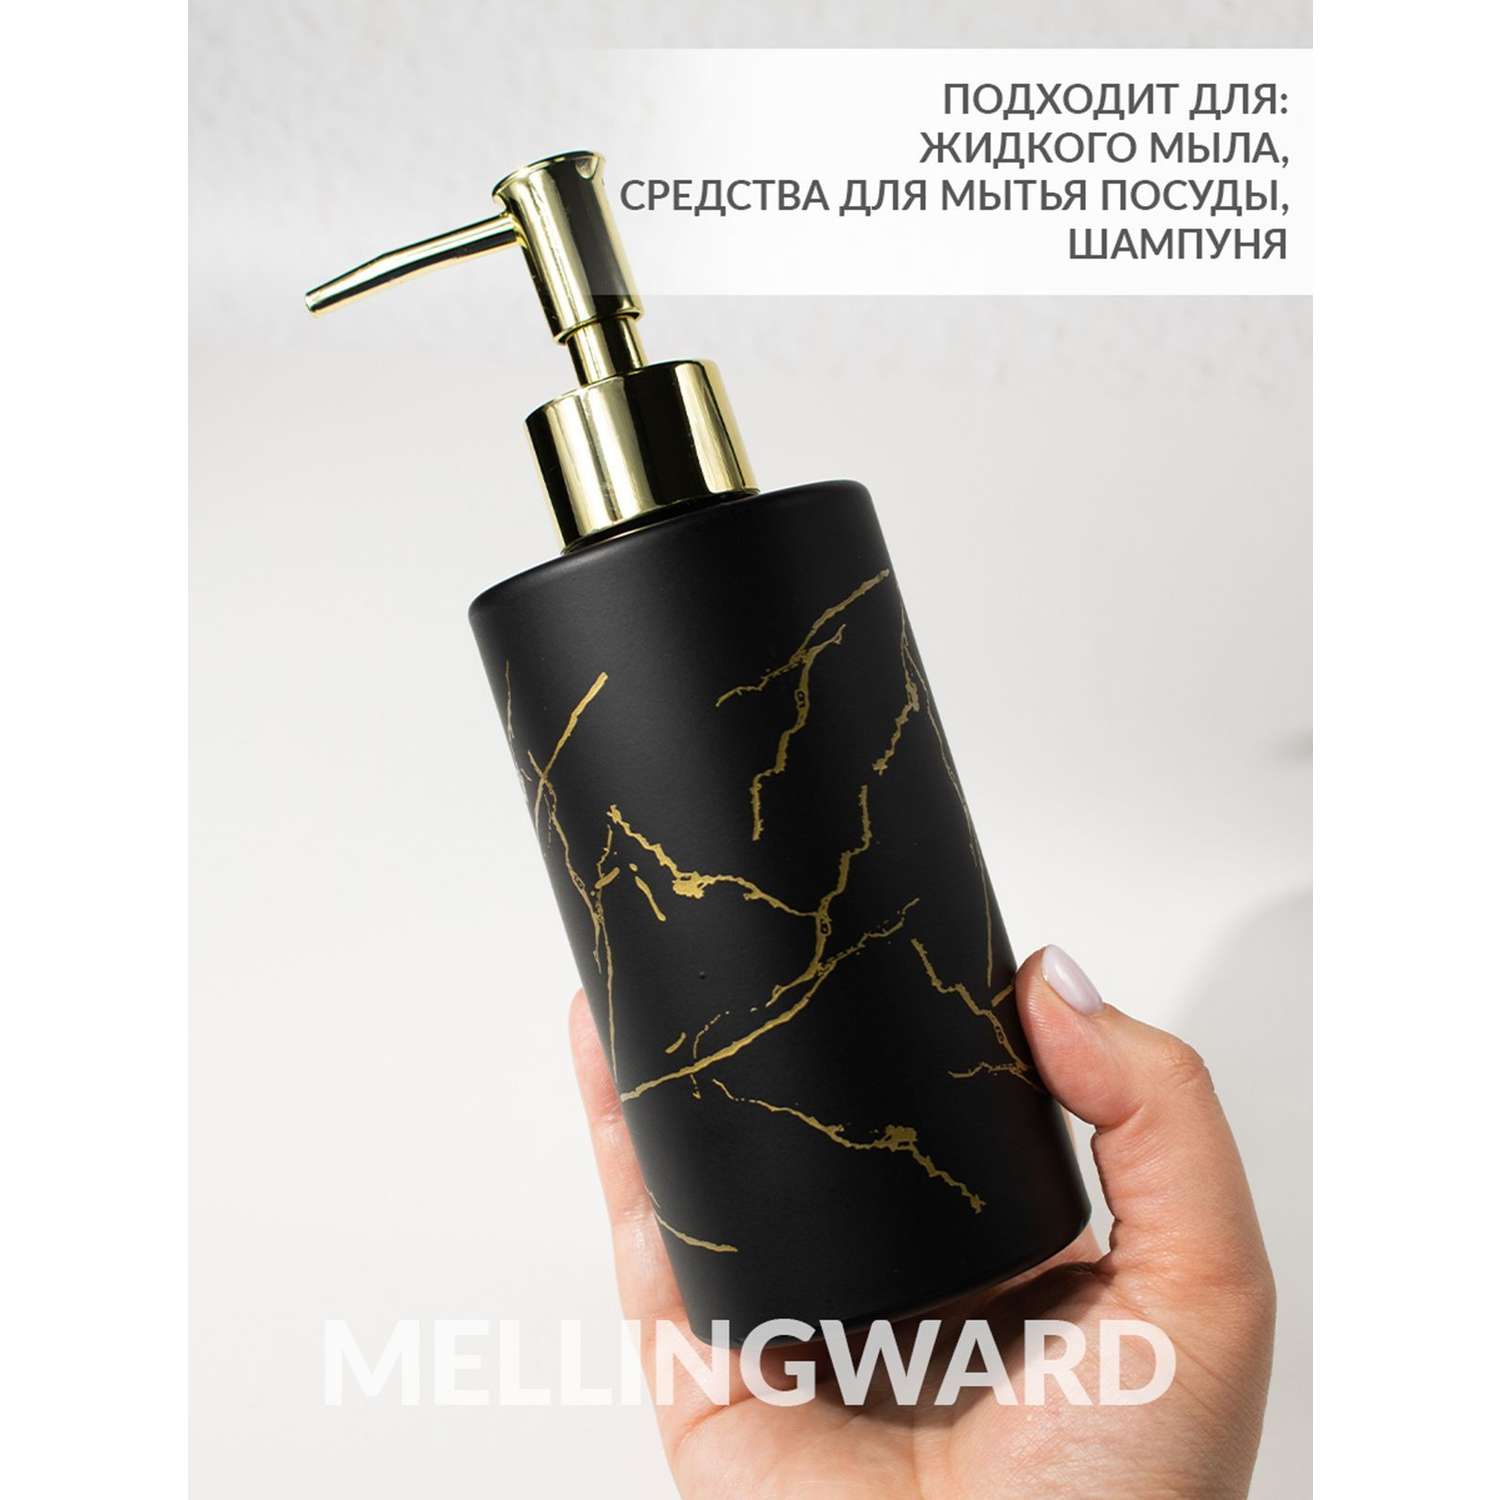 Дозатор для мыла Mellingward IMP0351 - фото 2